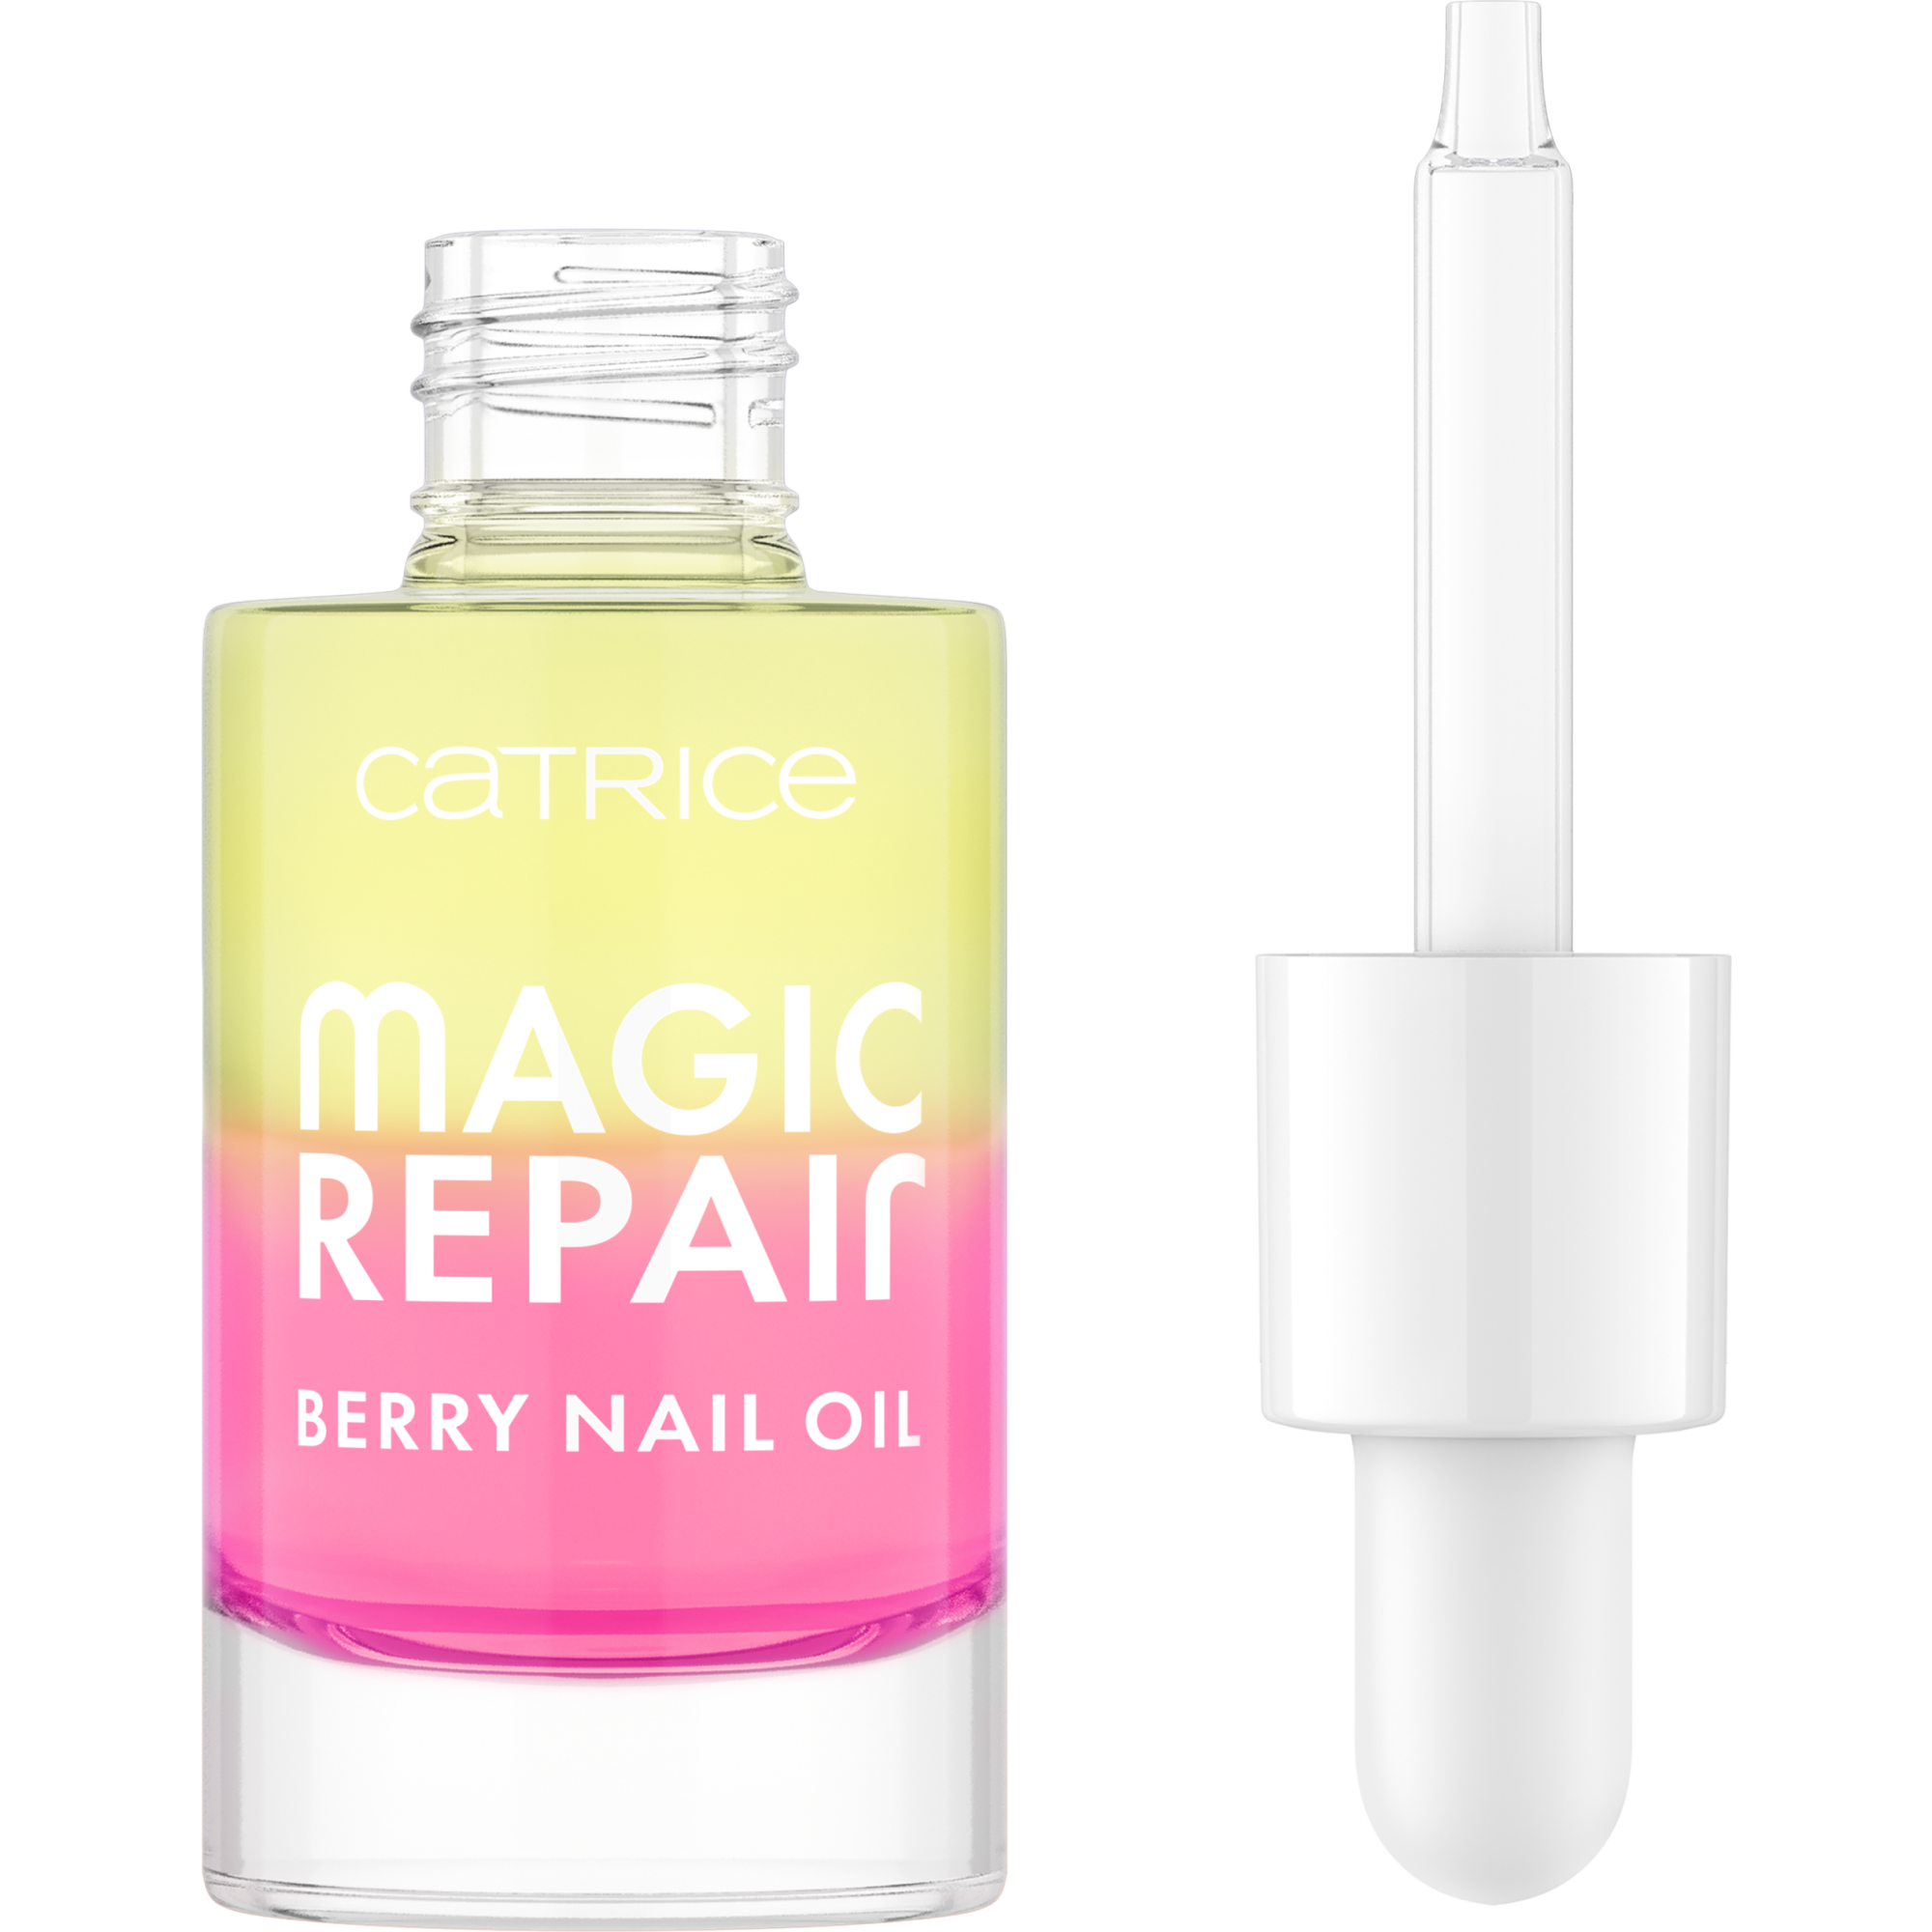 Magic Repair Berry Nail Oil huile pour les ongles